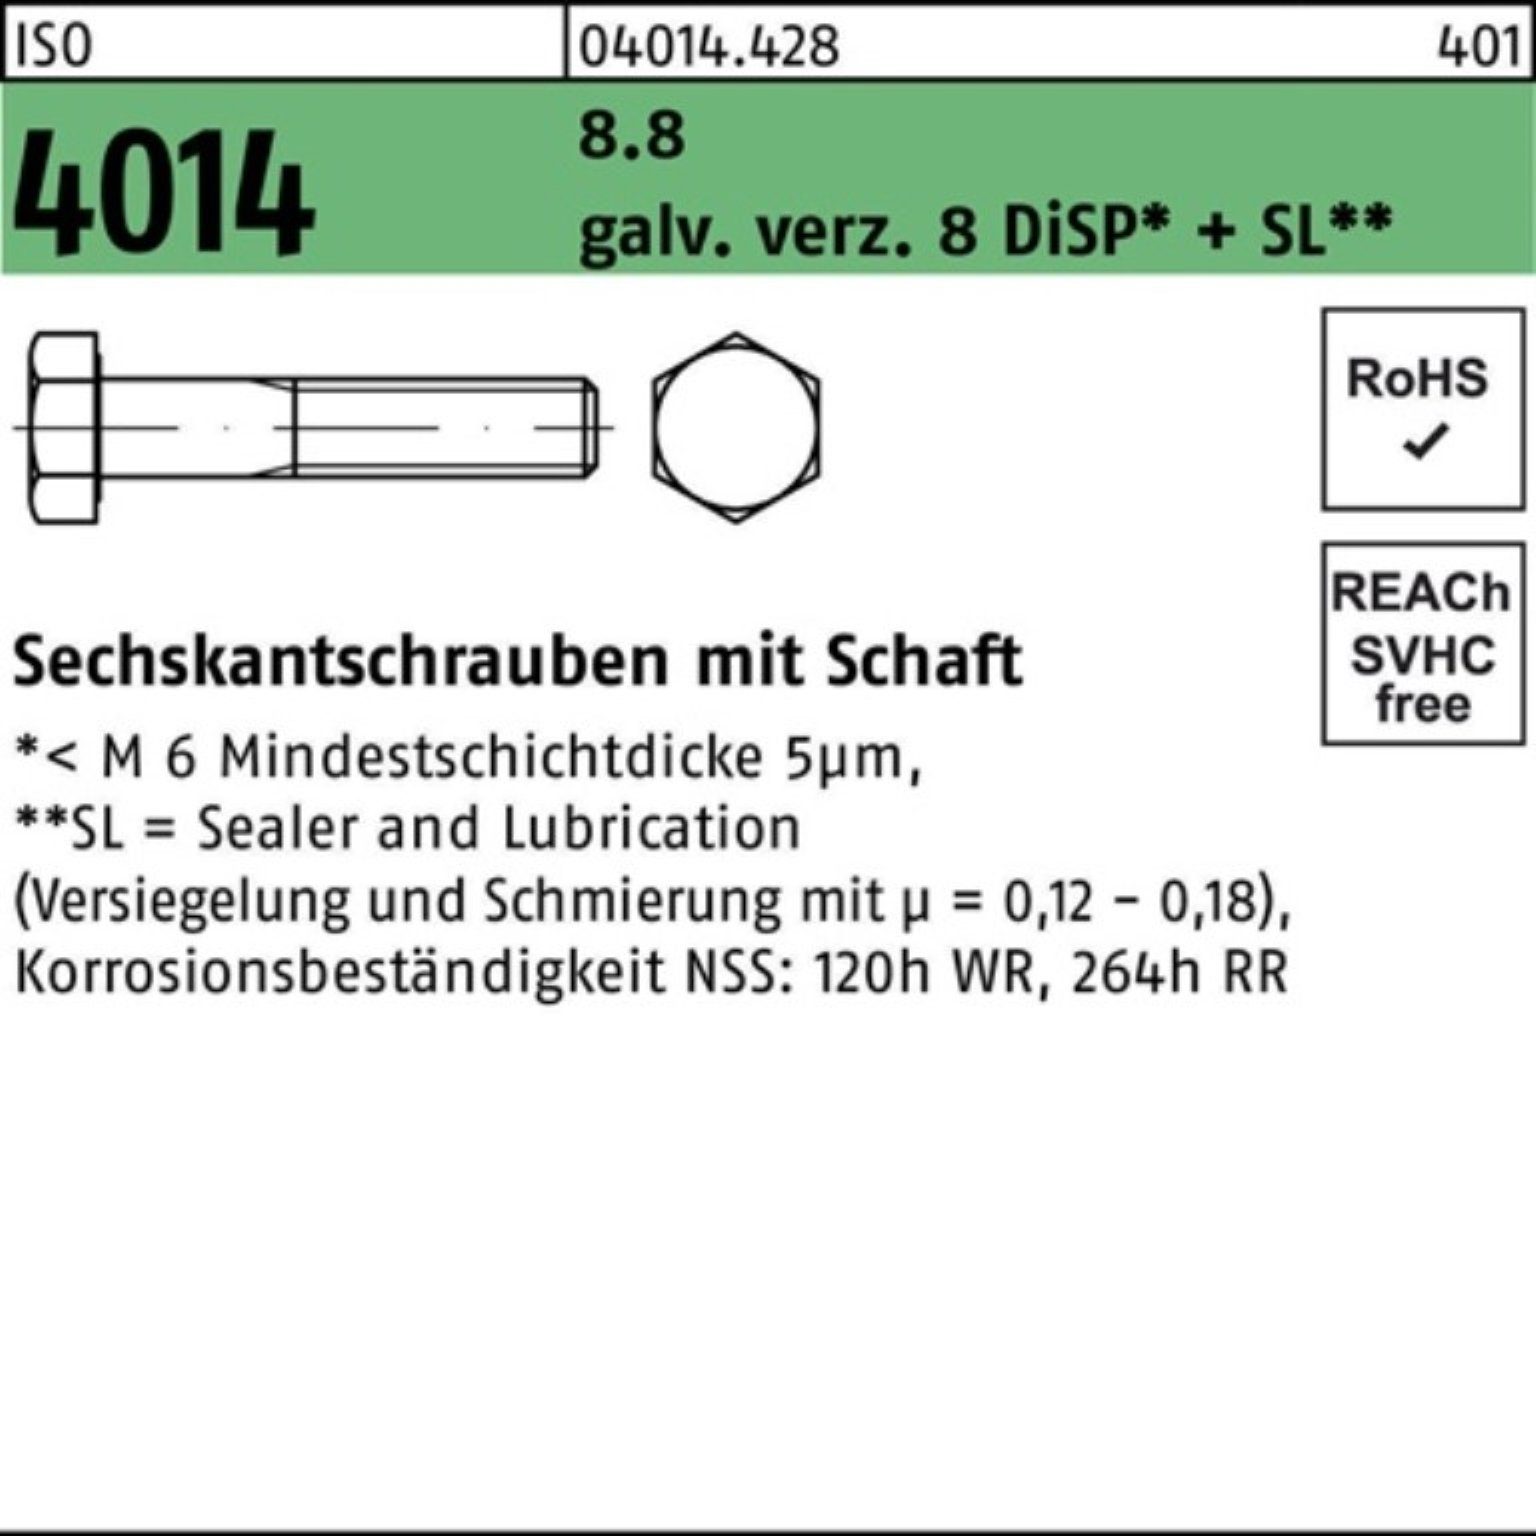 ISO galv.verz. Schaft Sechskantschraube Bufab Sechskantschraube 8.8 M10x140 100er 4014 Pack 8